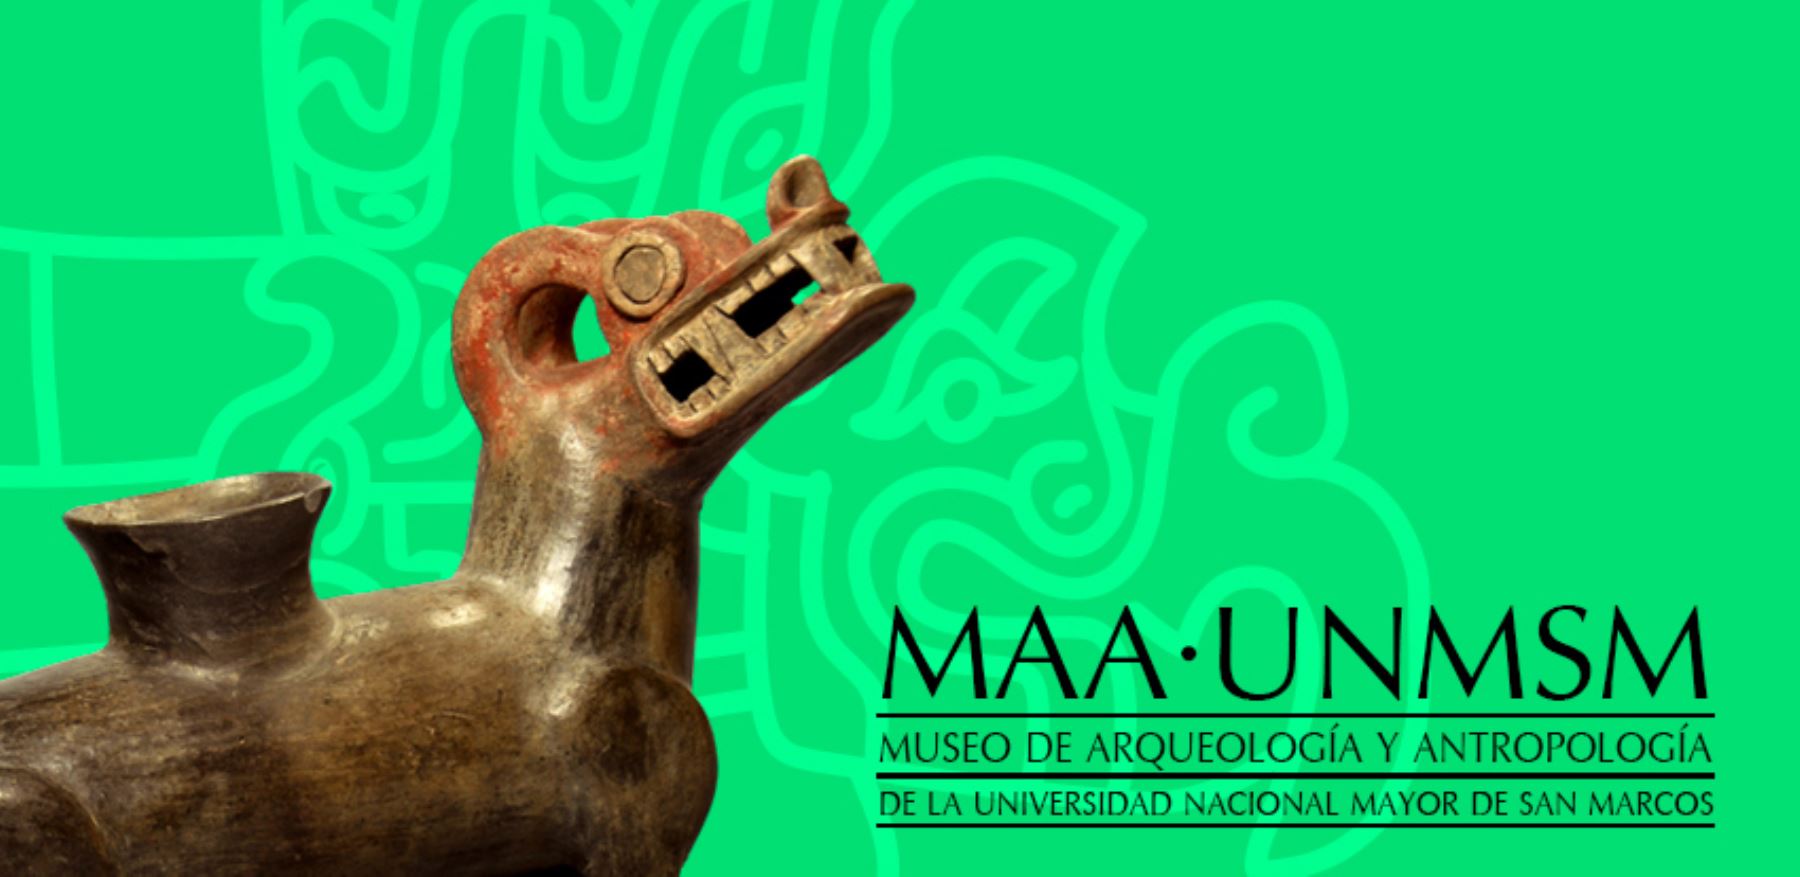 El Museo de Arqueología y Antropología de San Marcos tiene una intensa actividad de aniversario.